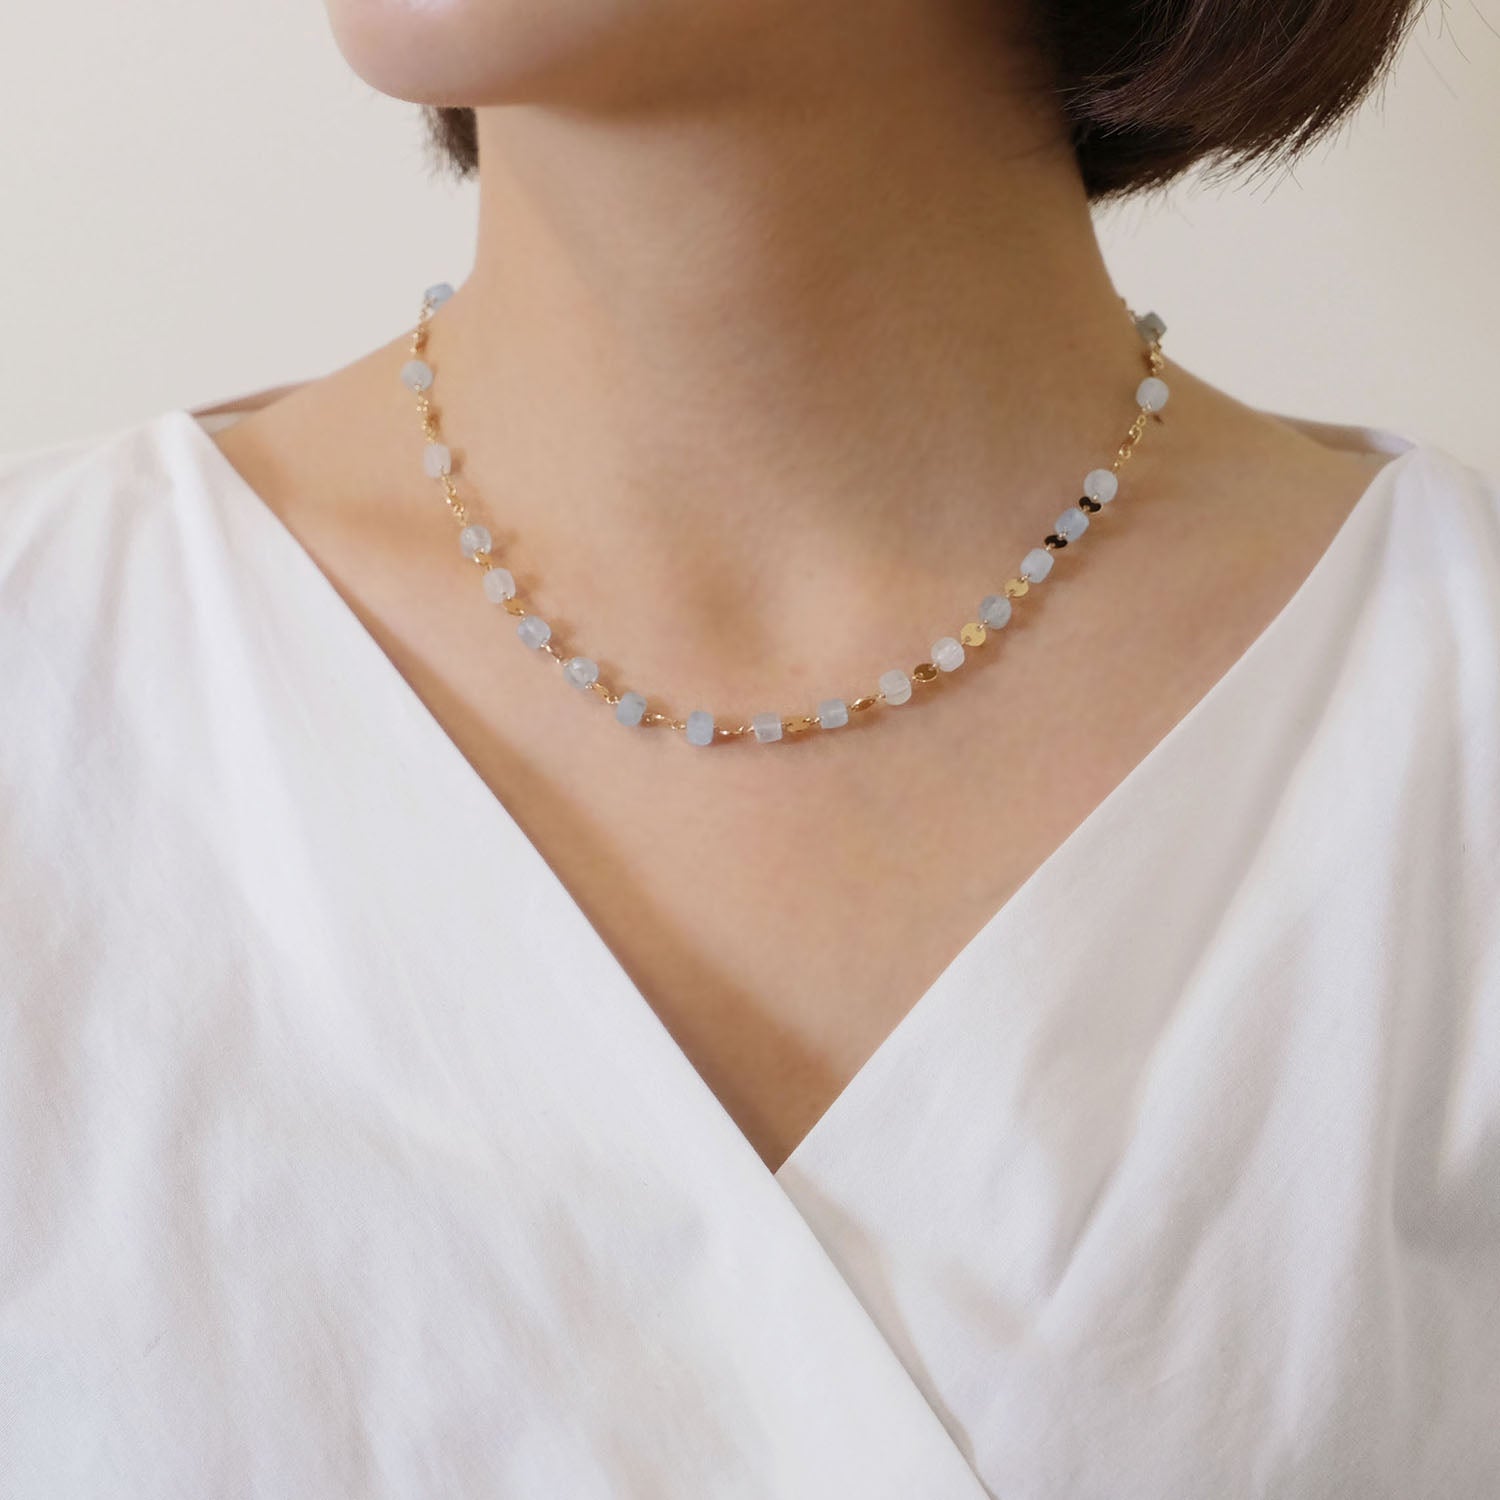 Colorful Gemstones Necklace (Aquamarine)